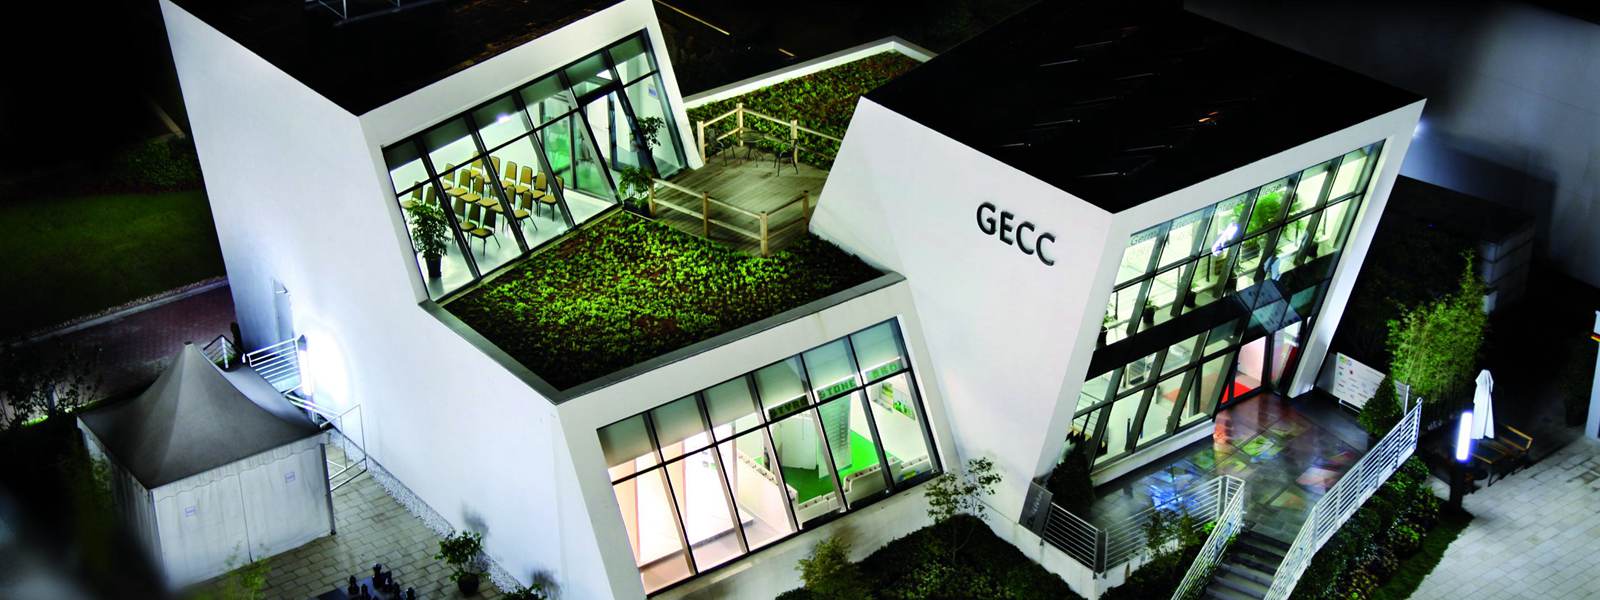 GECC Shanghai Energy Center Exhibition Hall